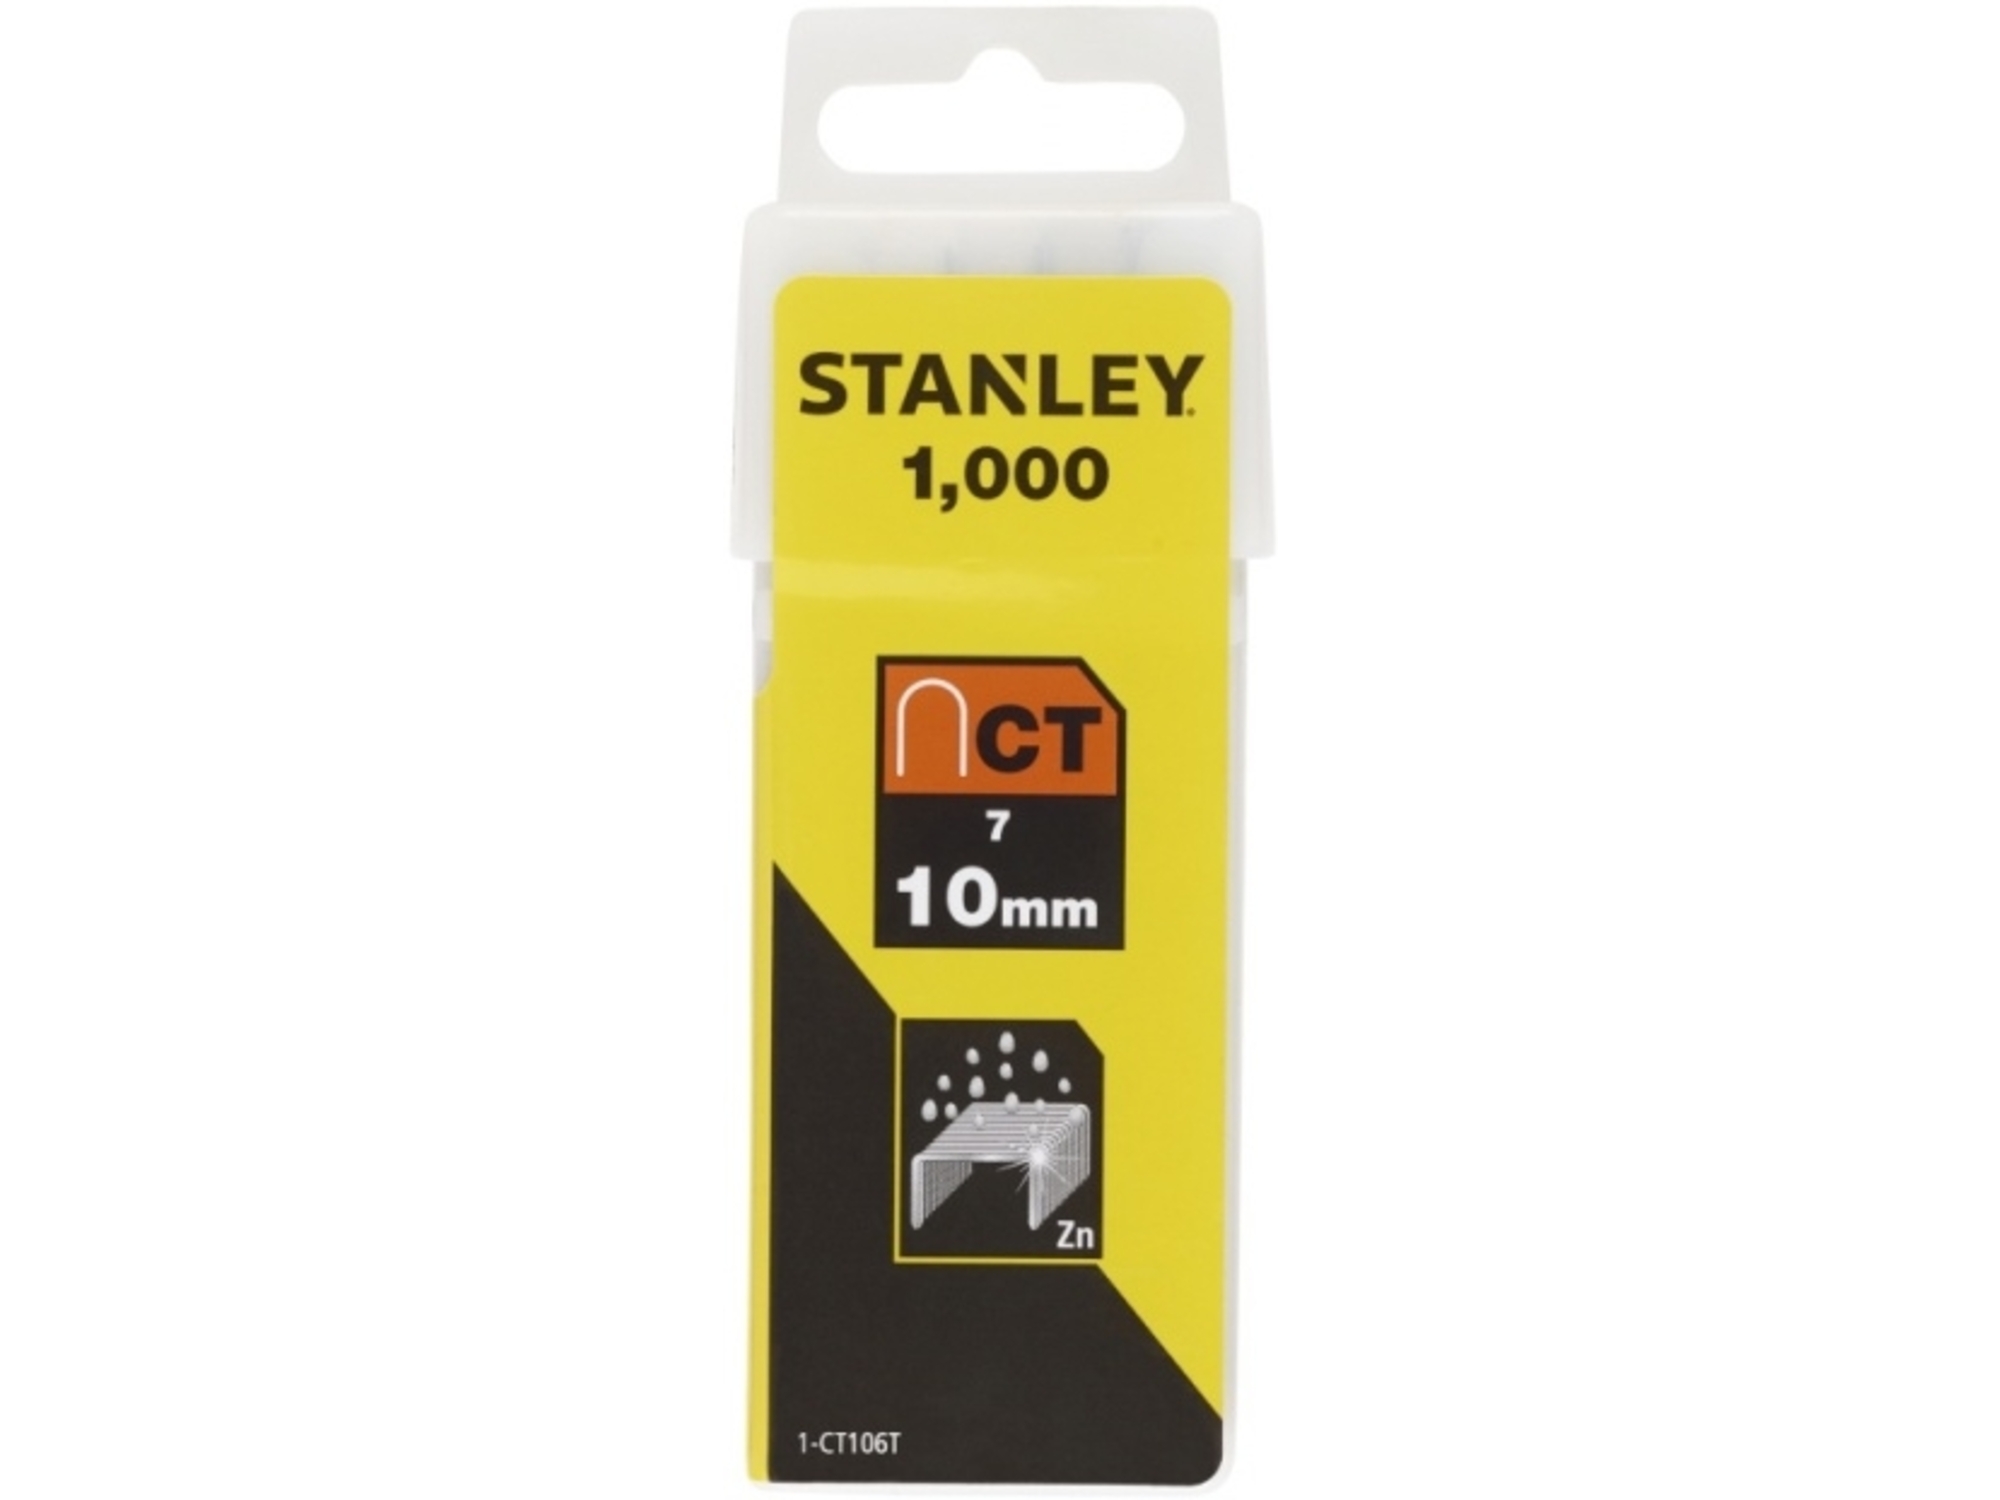 STANLEY sponke 1-CT106T, CT100, Tip 7, 1000kos, 10mm